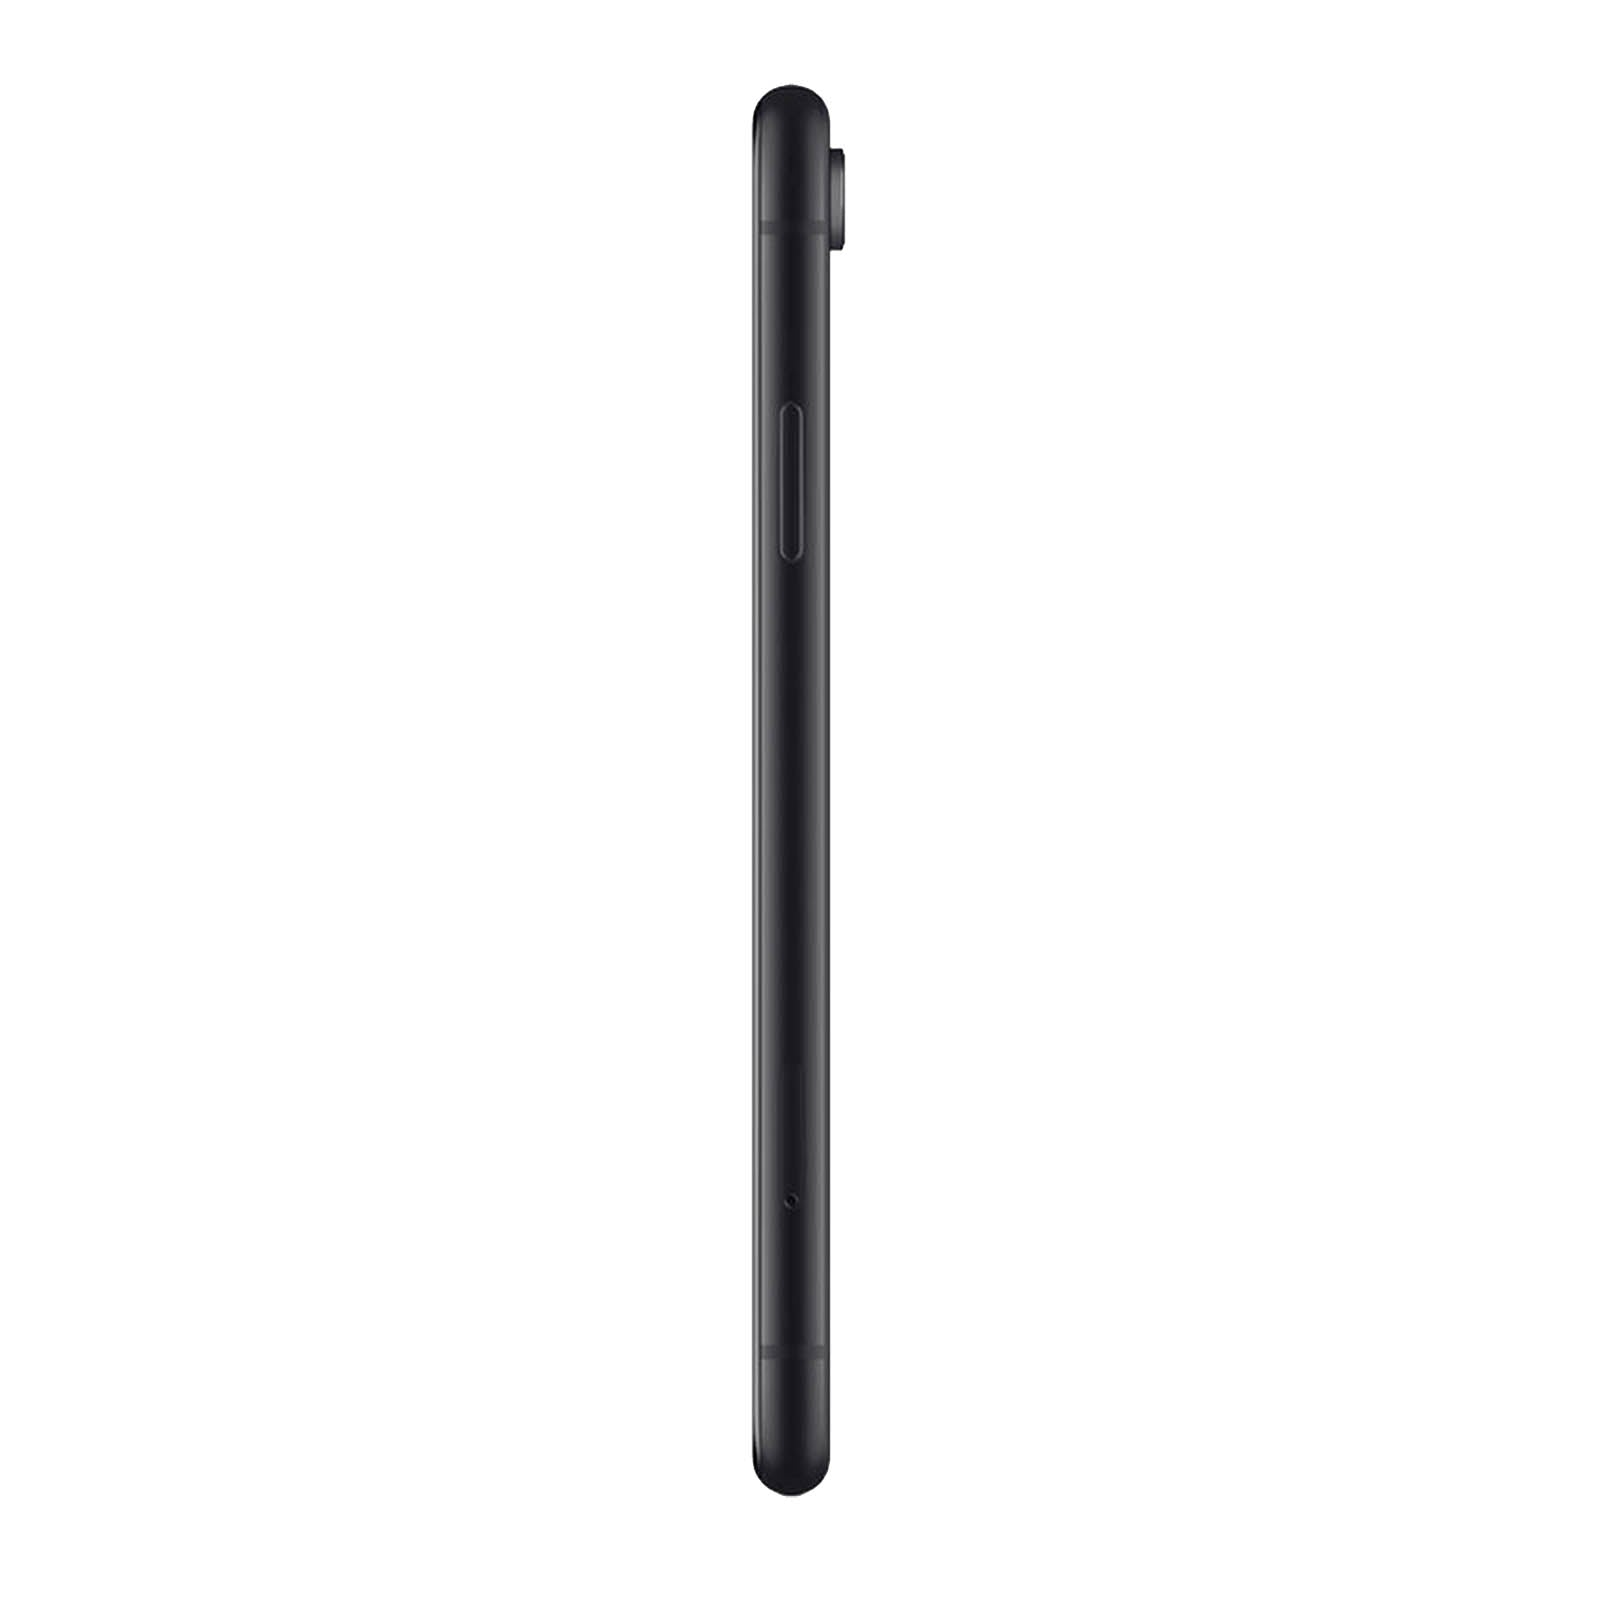 Apple iPhone XR 64GB Black Fair - AT&T